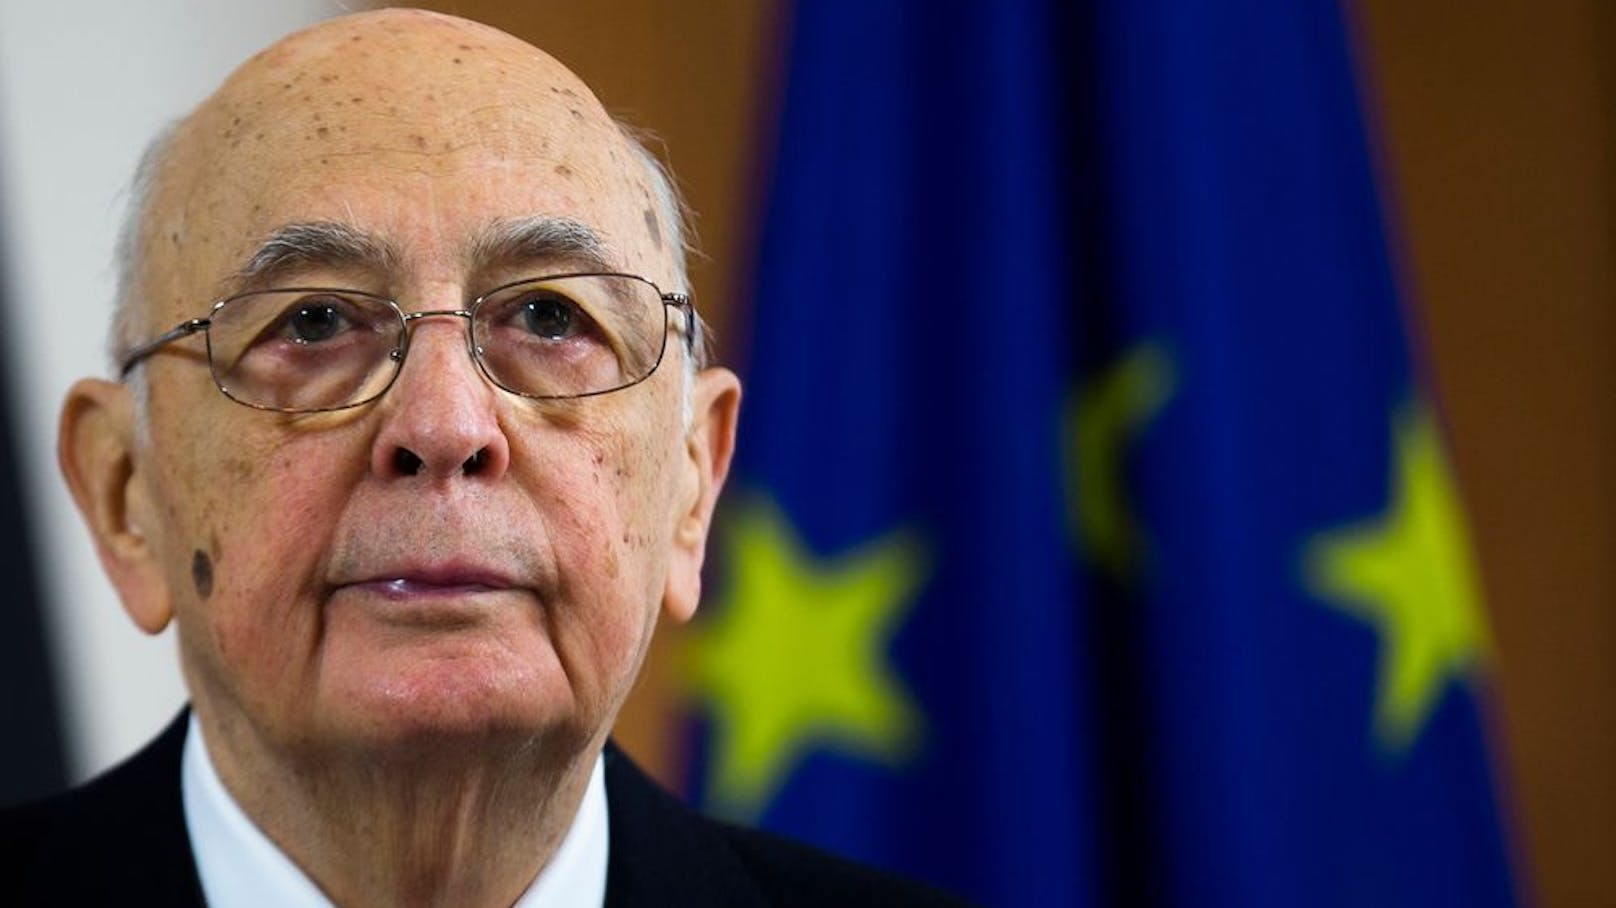 Giorgio Napolitano ist im Alter von 98 Jahren gestorben.